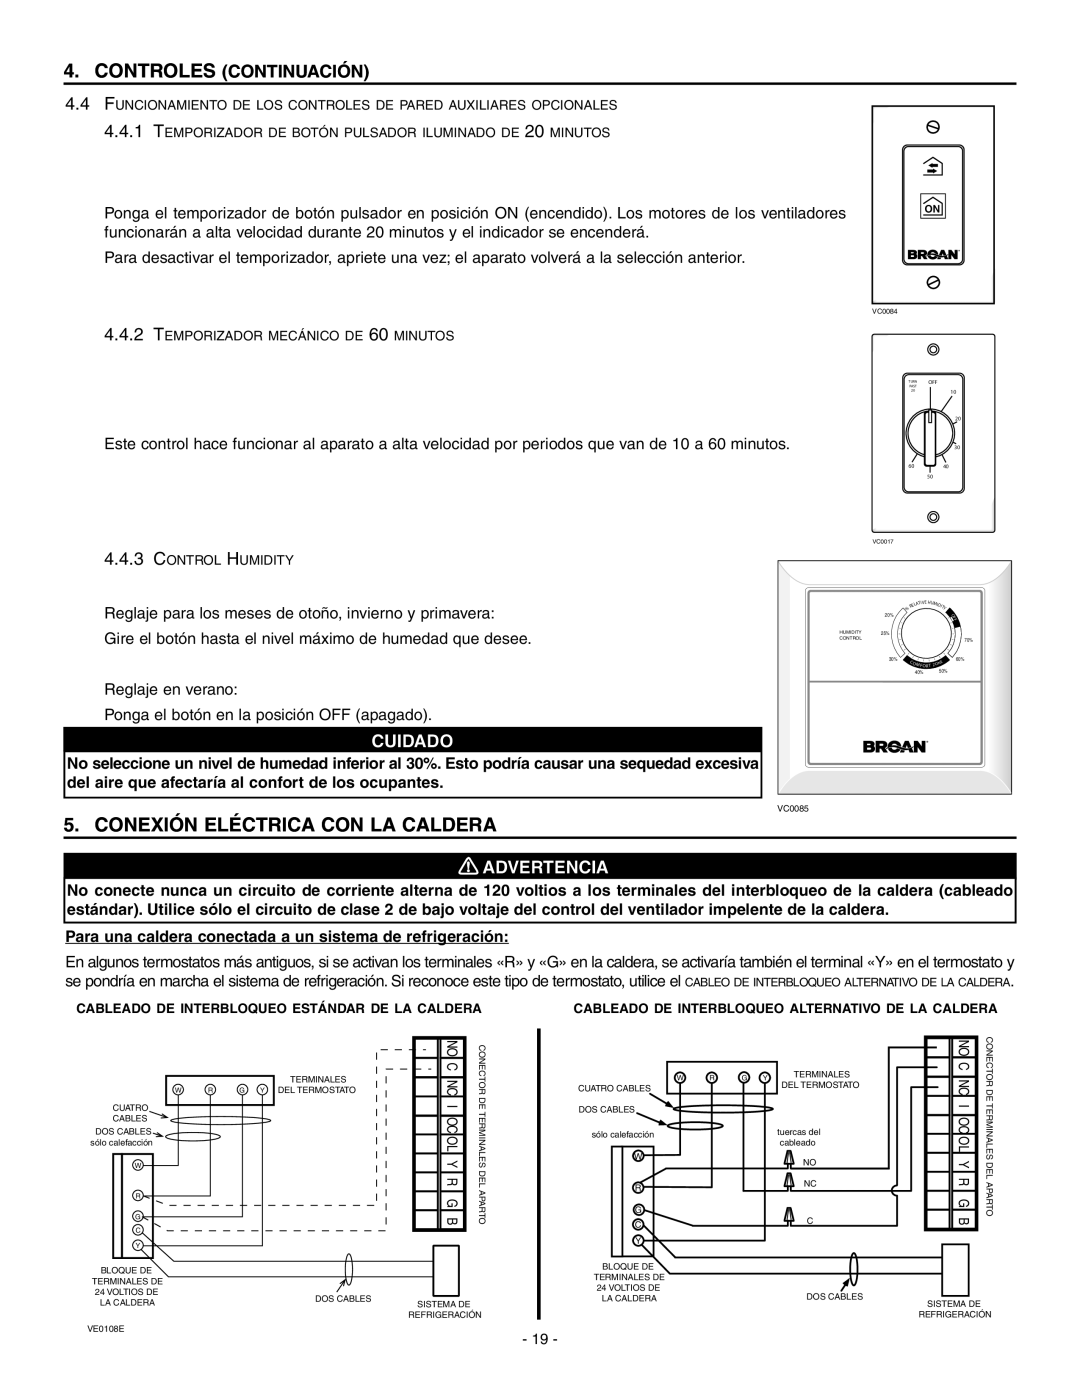 Broan ERV90HCT Conexión Eléctrica Con La Caldera, Controles Continuación, Cuidado, 0 ! ADVERTENCIA 